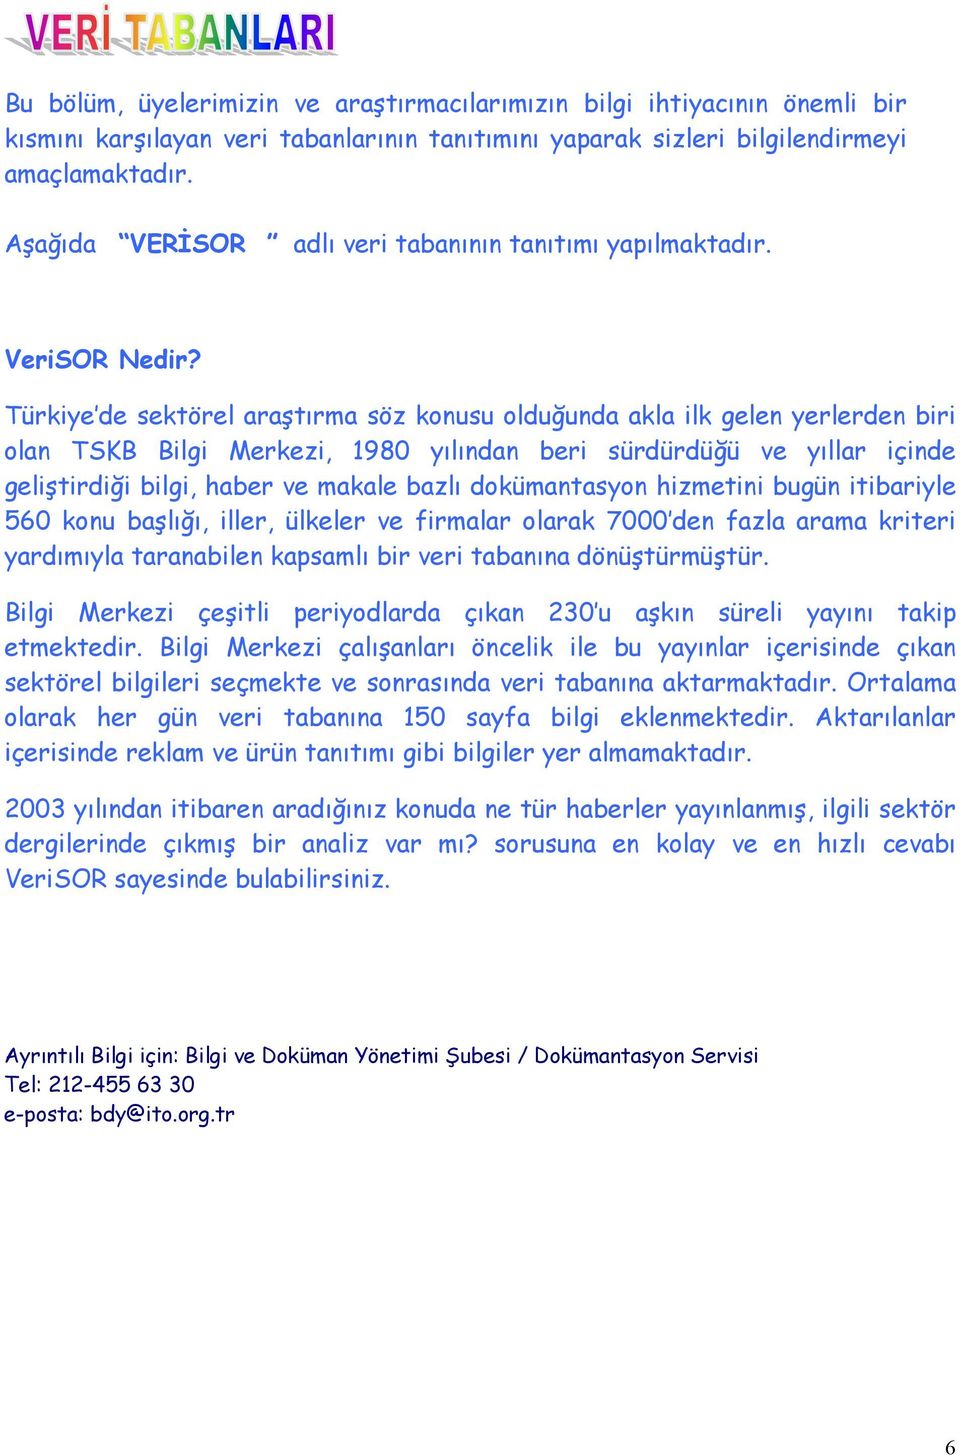 Türkiye de sektörel araştõrma söz konusu olduğunda akla ilk gelen yerlerden biri olan TSKB Bilgi Merkezi, 1980 yõlõndan beri sürdürdüğü ve yõllar içinde geliştirdiği bilgi, haber ve makale bazlõ